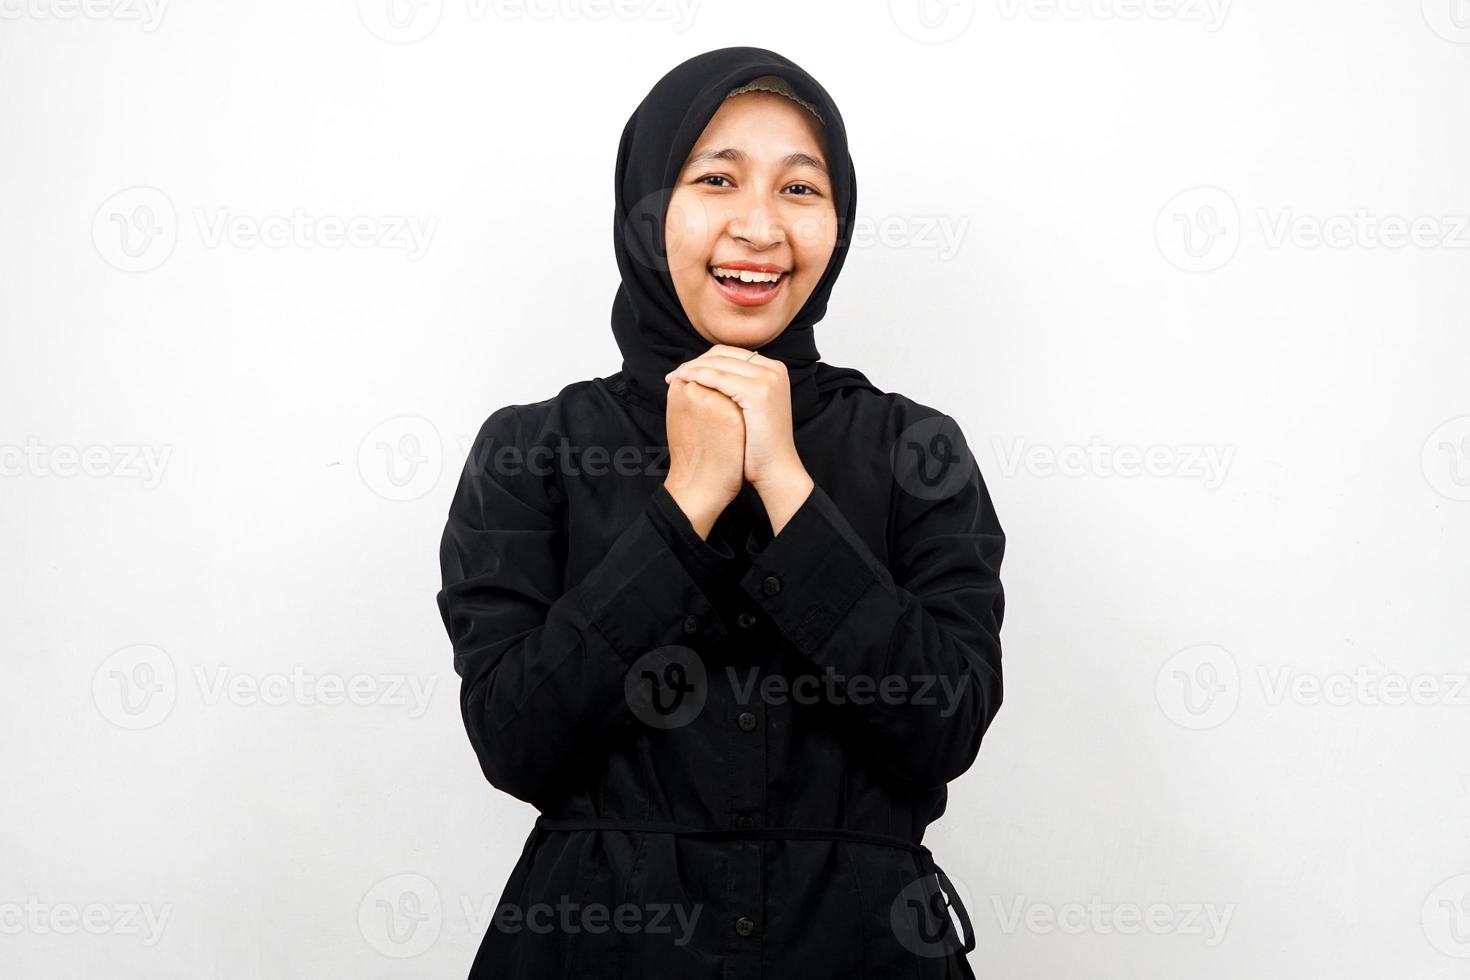 bella giovane donna musulmana asiatica scioccata, sorpresa, espressione wow, mano che tiene smartphone con schermo bianco o vuoto, promozione dell'app, promozione del prodotto, presentazione di qualcosa, isolato foto